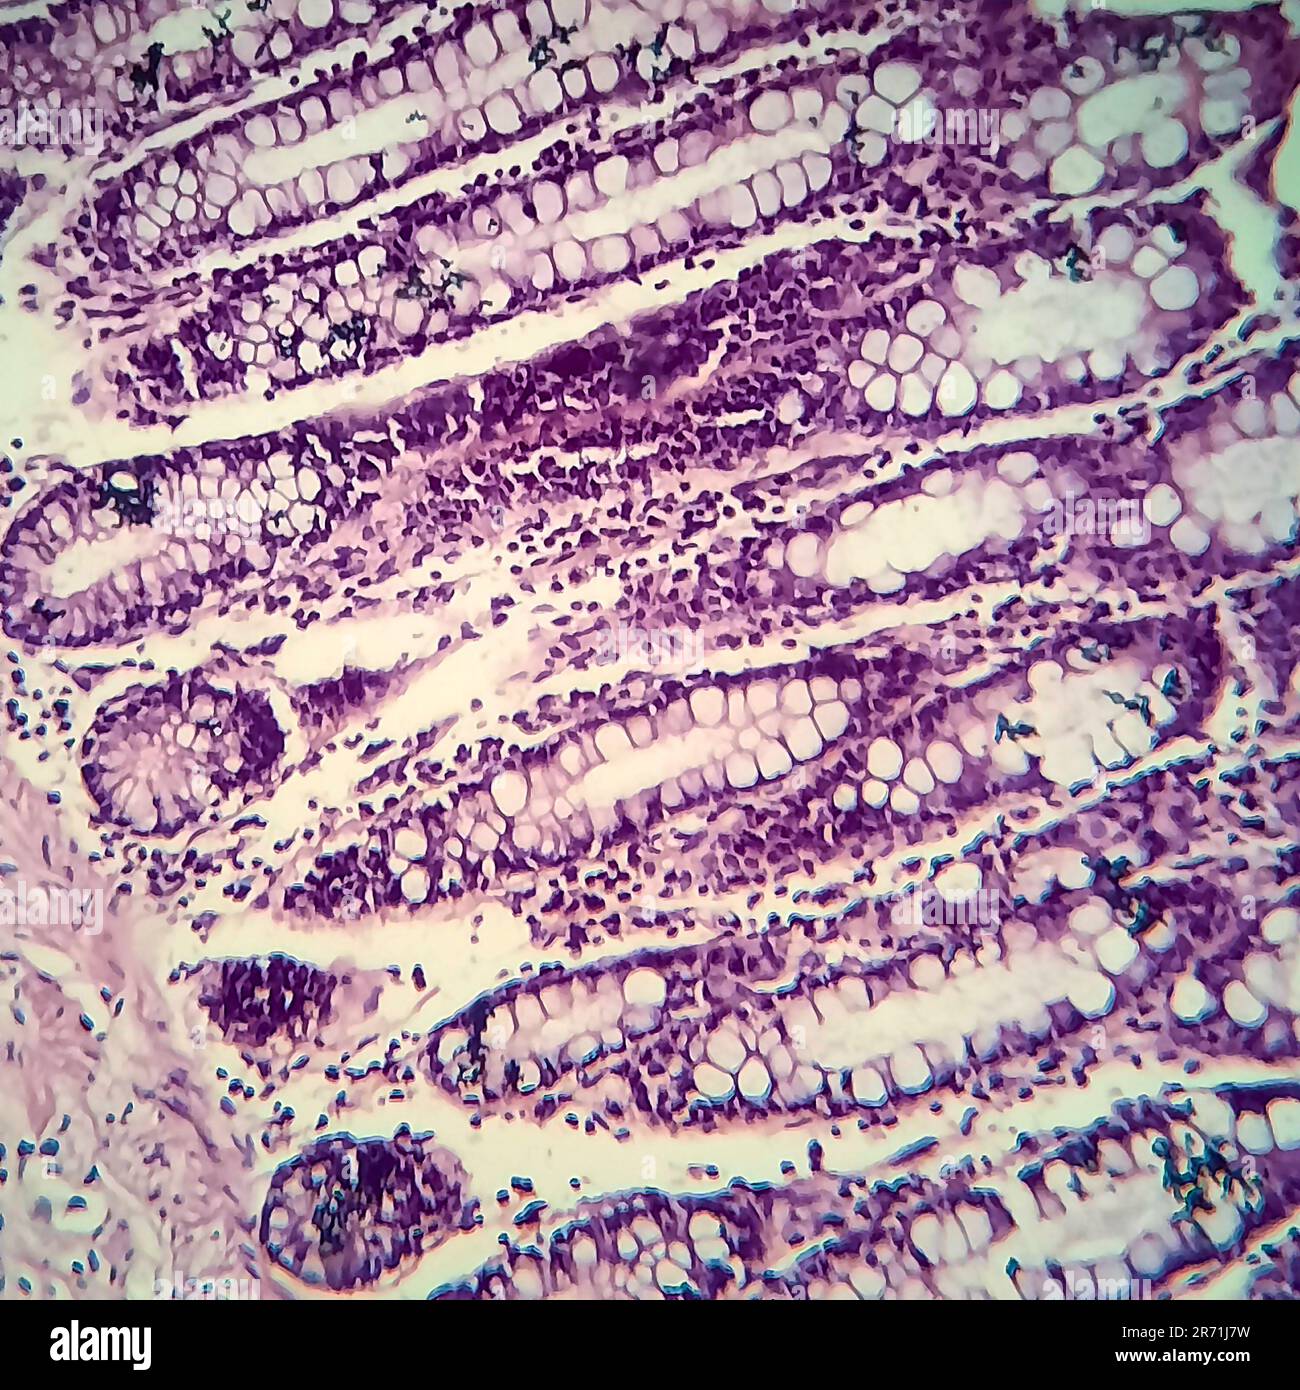 Bakterielle Dysenterie, Lichtmikroskopie, Foto unter dem Mikroskop, das das Vorhandensein von Bakterien und die Ansammlung von Entzündungszellen im Darmepithe zeigt Stockfoto